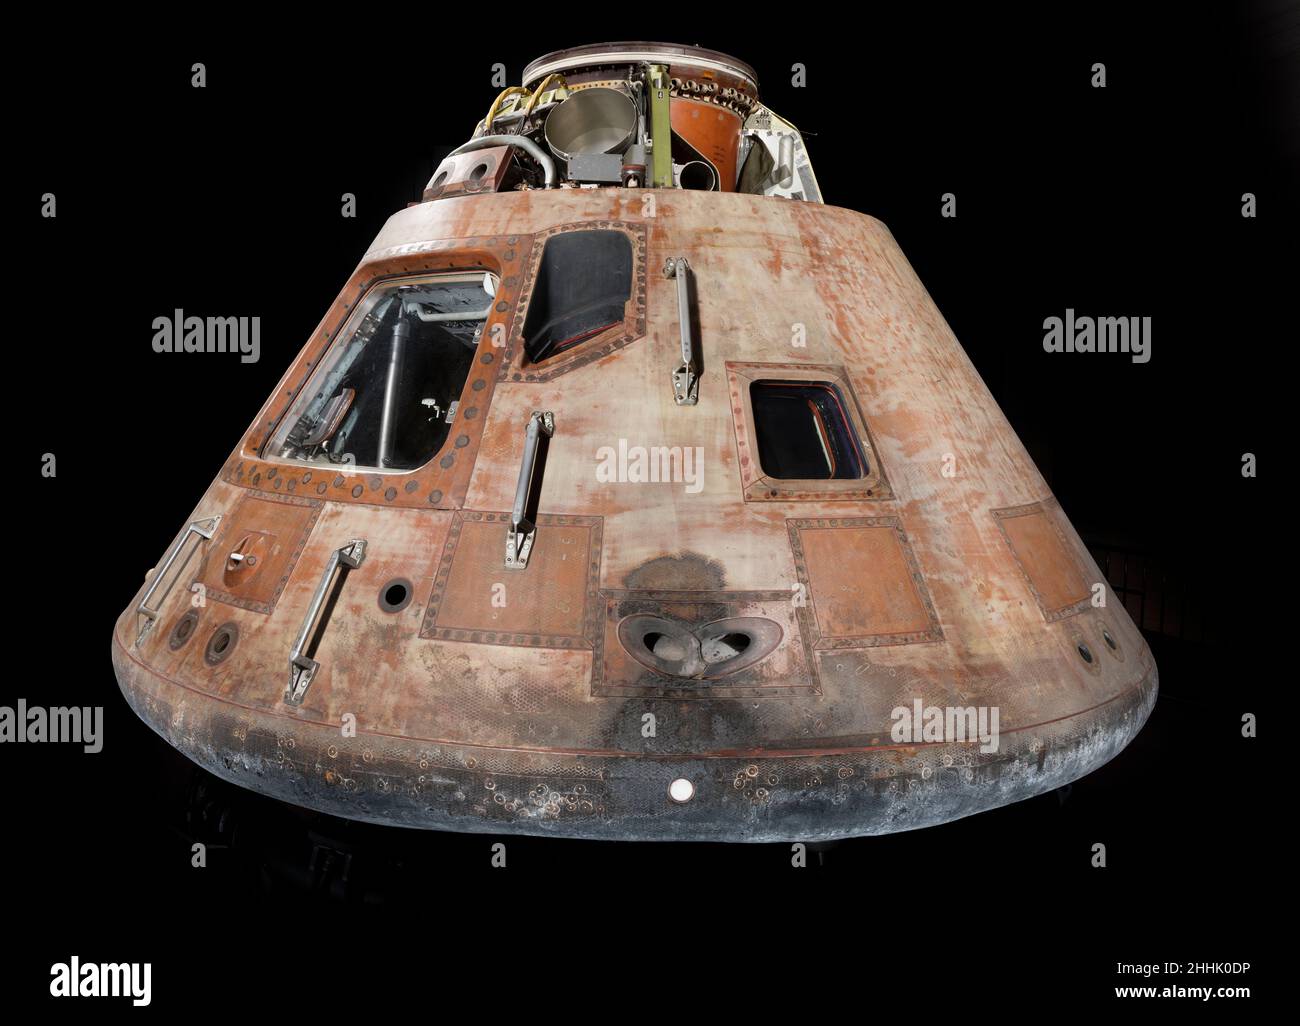 Le module de commande Apollo 11, 'Columbia, les quartiers de vie de l'équipage de trois personnes pendant la plupart de la première mission d'atterrissage lunaire en équipage en juillet 1969 Banque D'Images